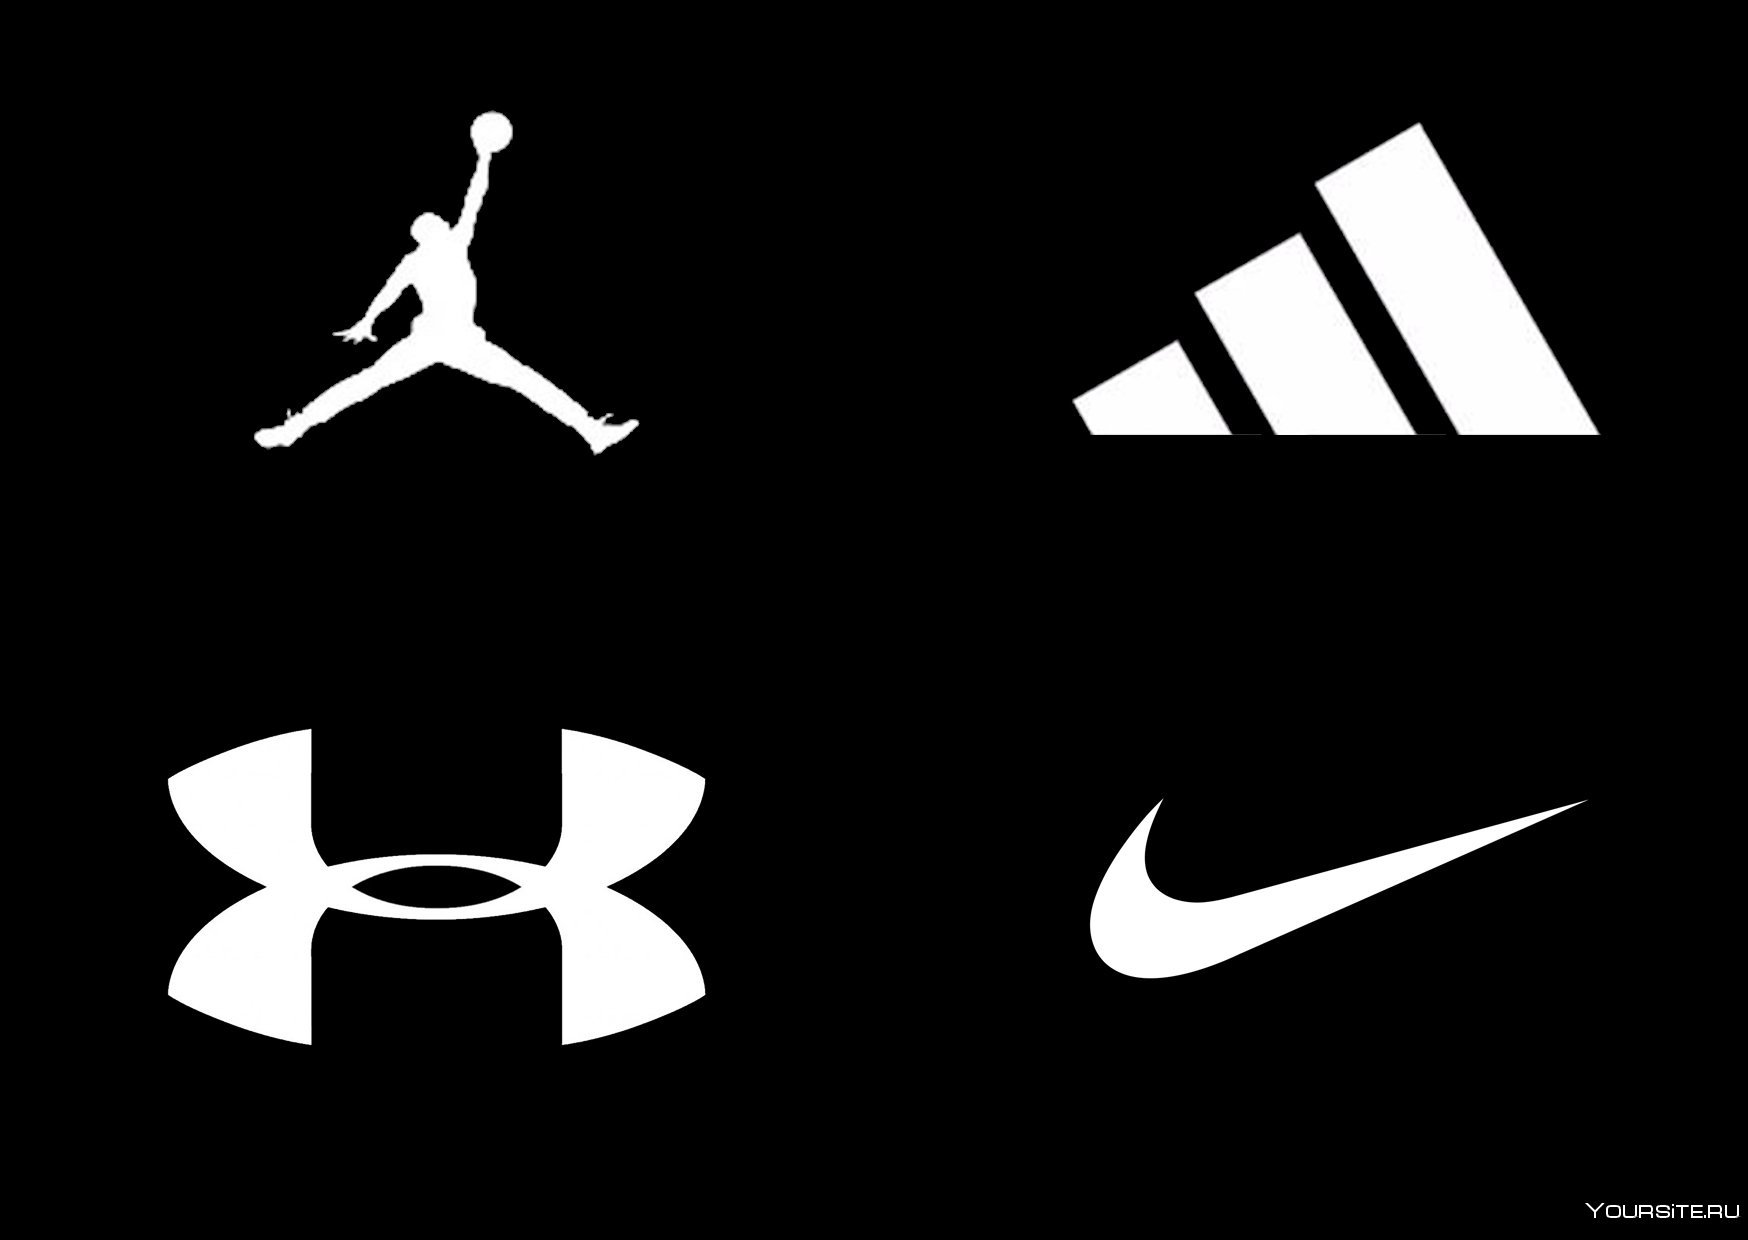 Спортивные лейблы. Спортивные бренды. Фирмы спортивной одежды. Логотипы спортивных брендов. Значки фирм спортивной одежды.